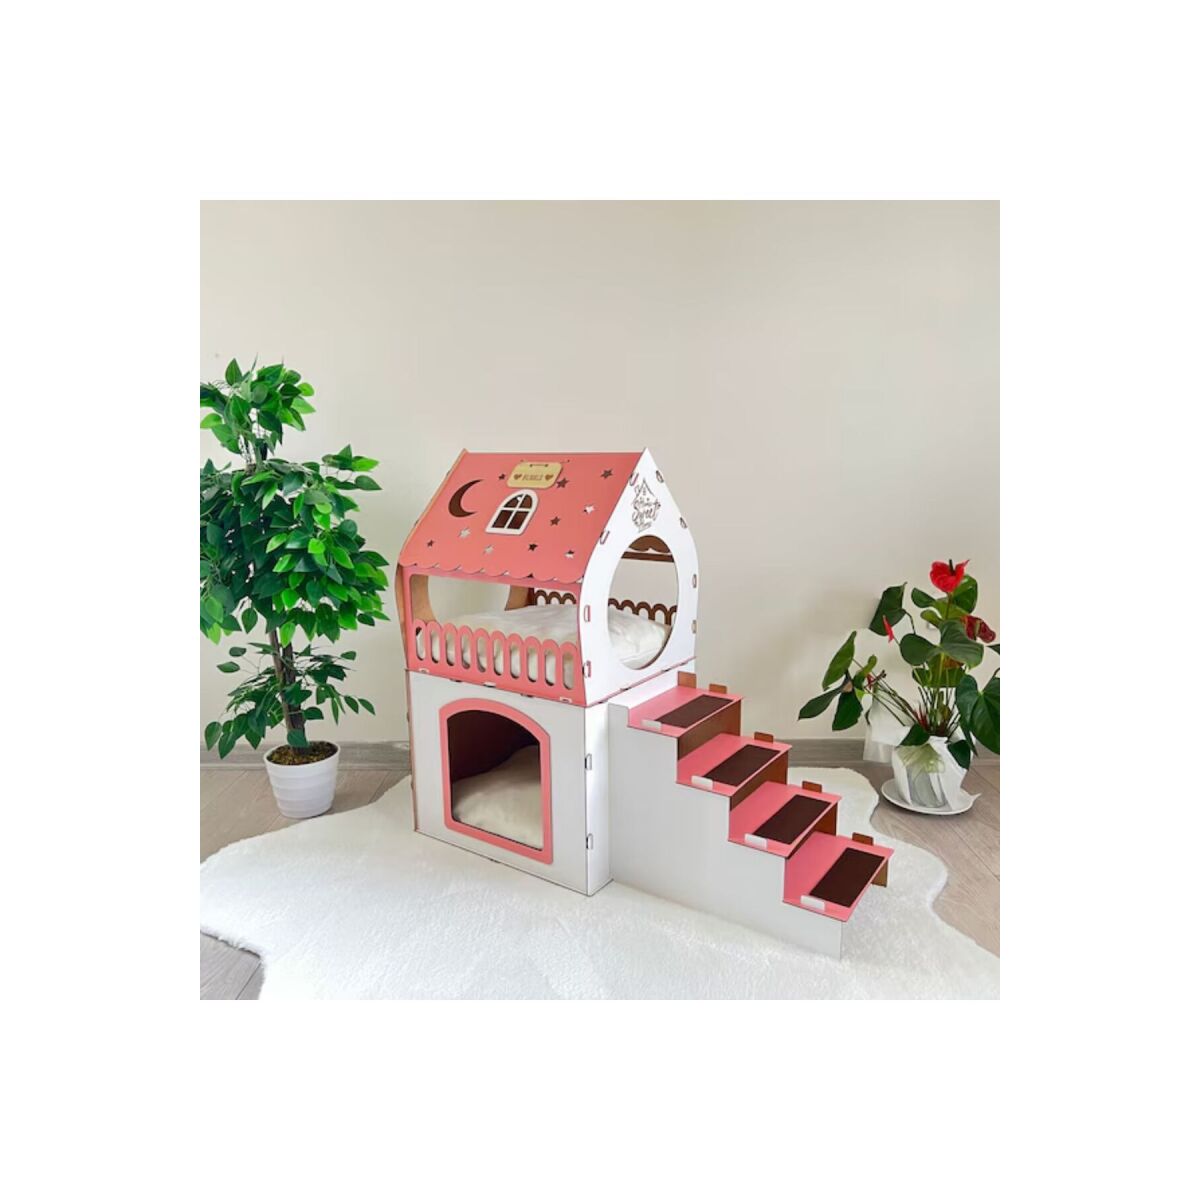 2 Katlı Merdivenli Kedi Evi, Köpek Evi, Tavşan Evi Mdf Beyaz-Pembe Orta Boy